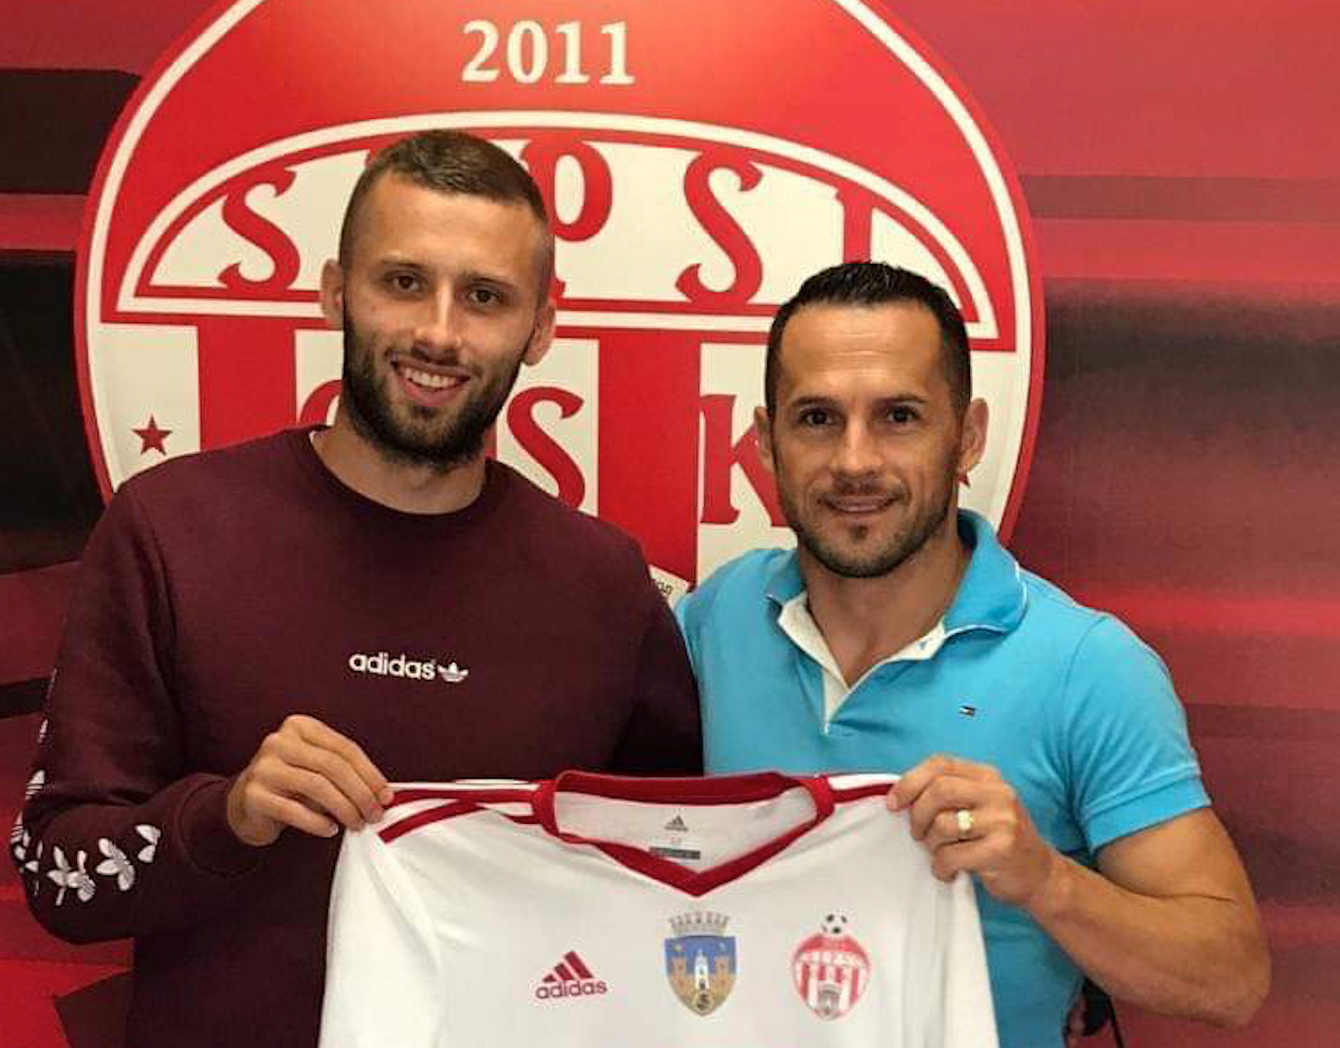 Pavol Šafranko sa stal hráčom rumunského klubu Sepsi, s ktorým podpísal zmluvu na tri roky.